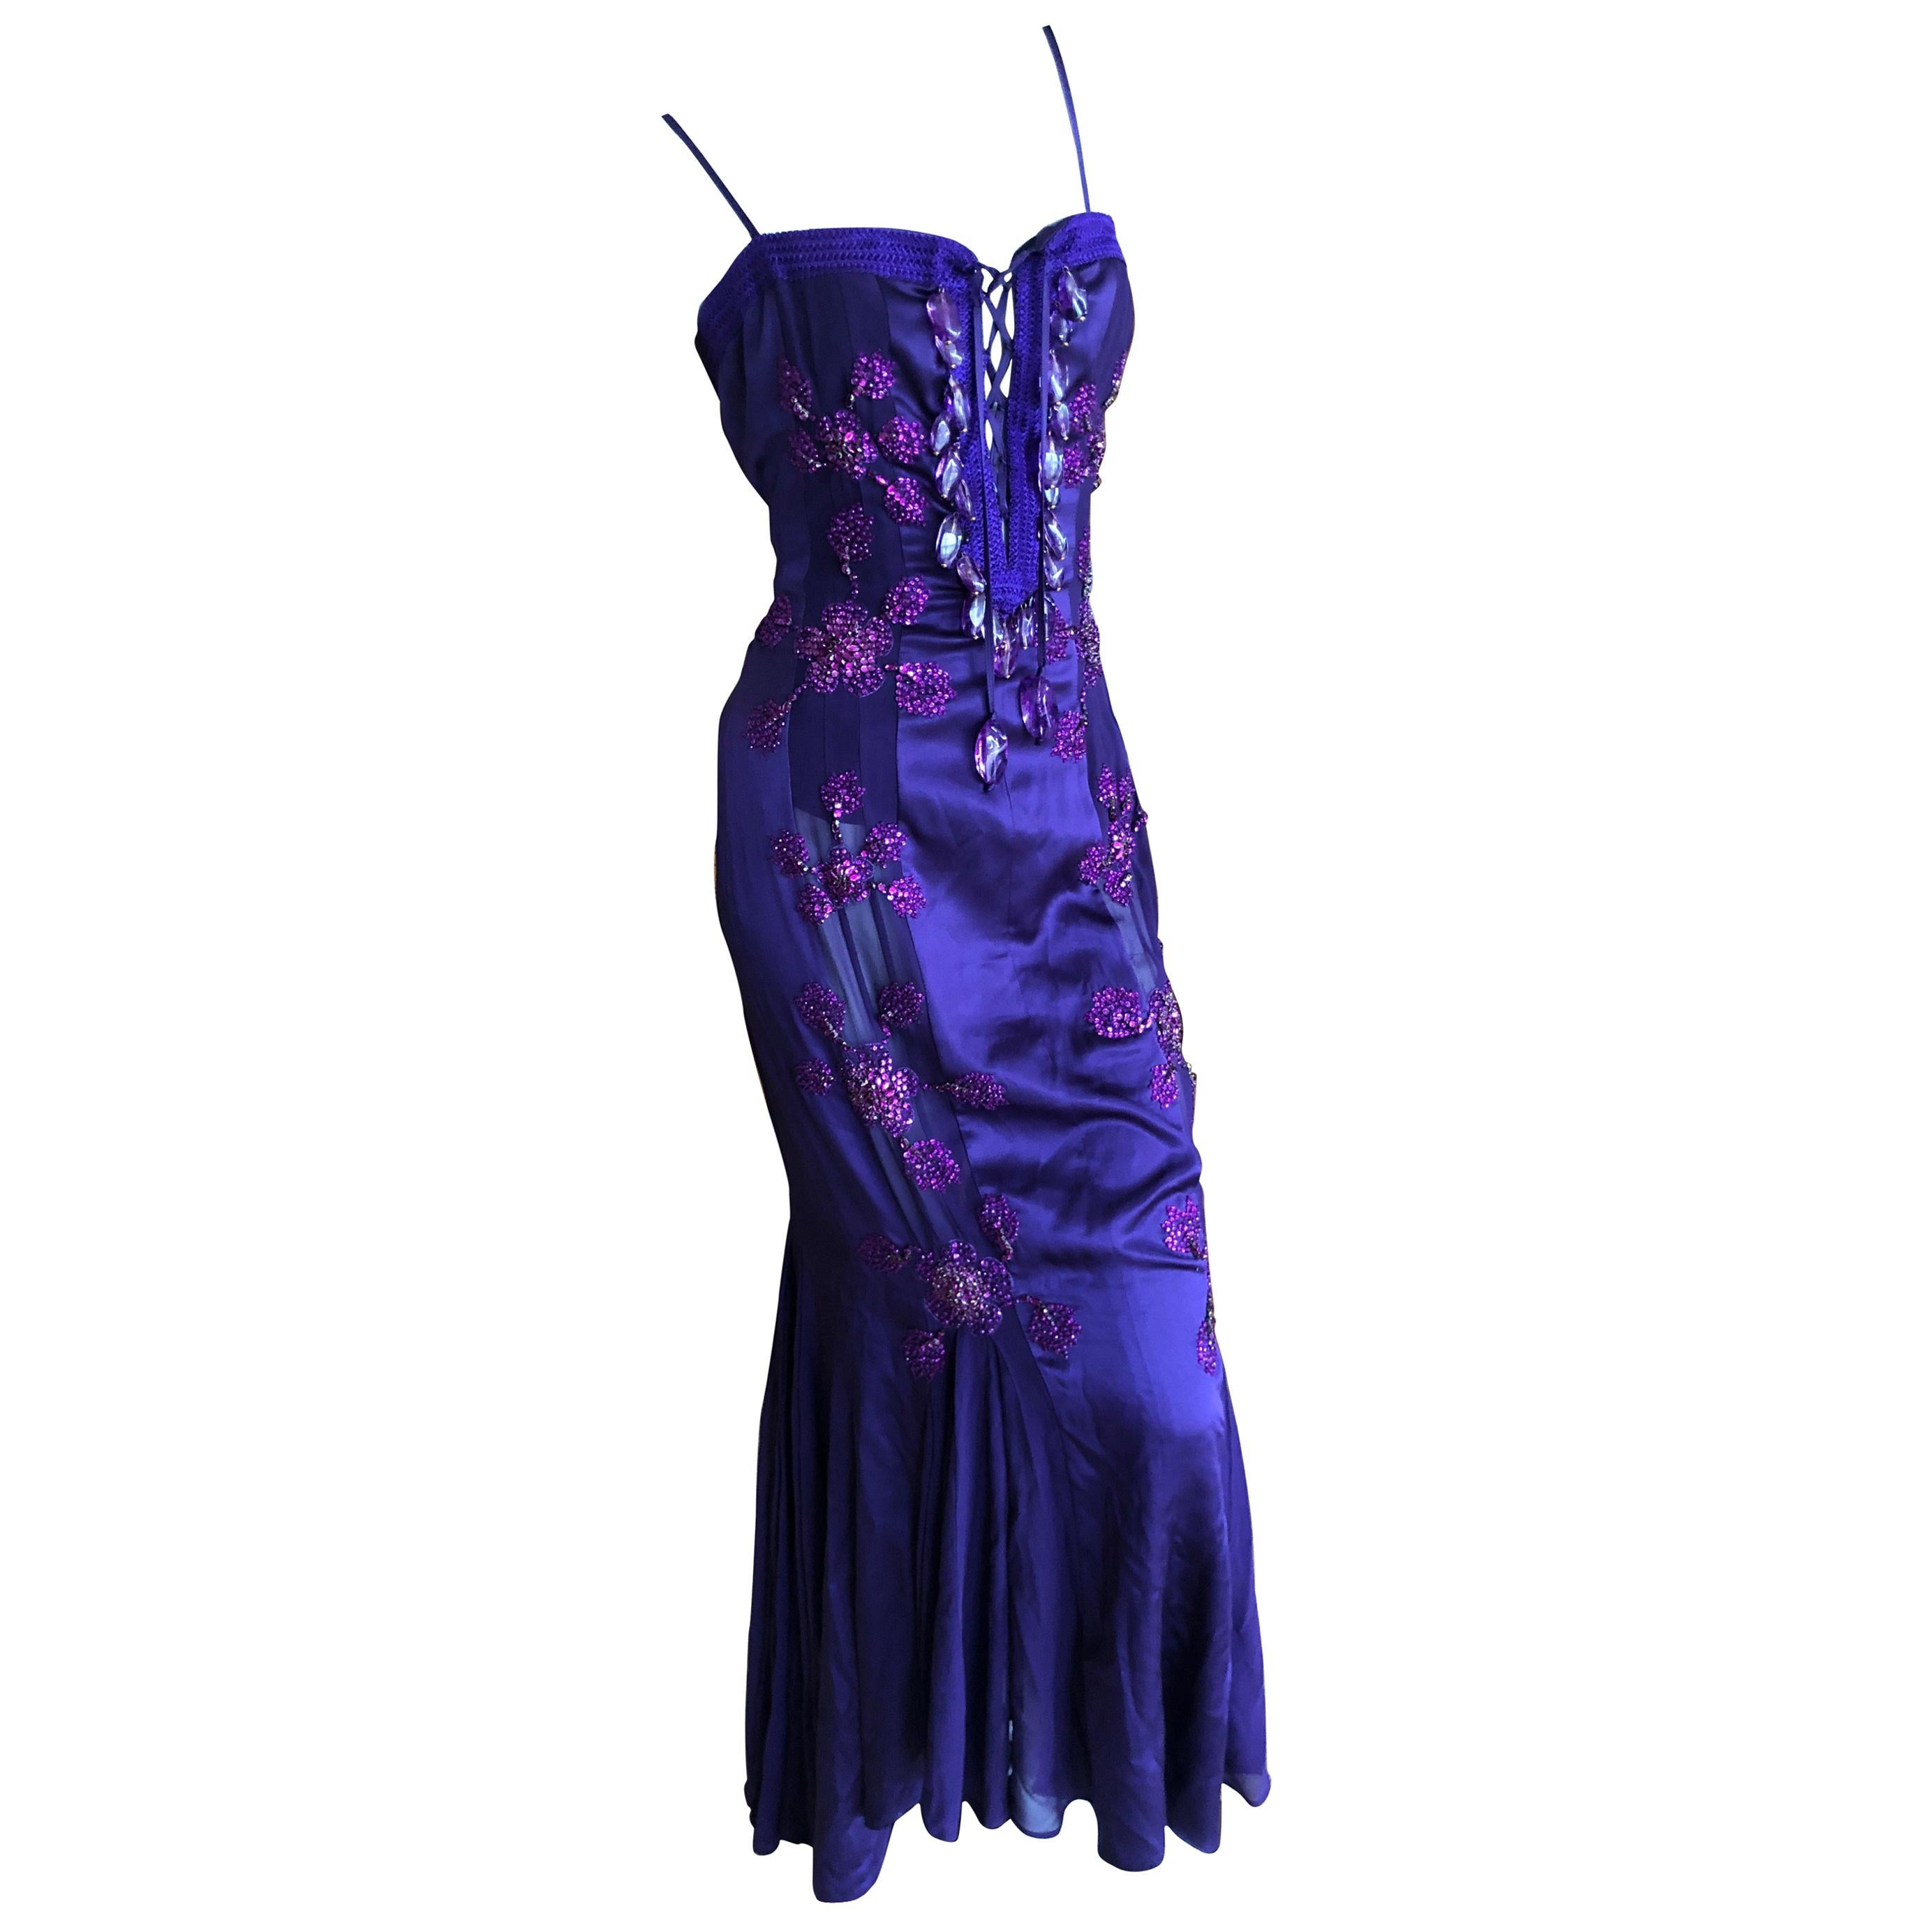 Emanuel Ungaro Amethyst Embellished Vintage Silk Evening Dress by Peter Dundas For Sale